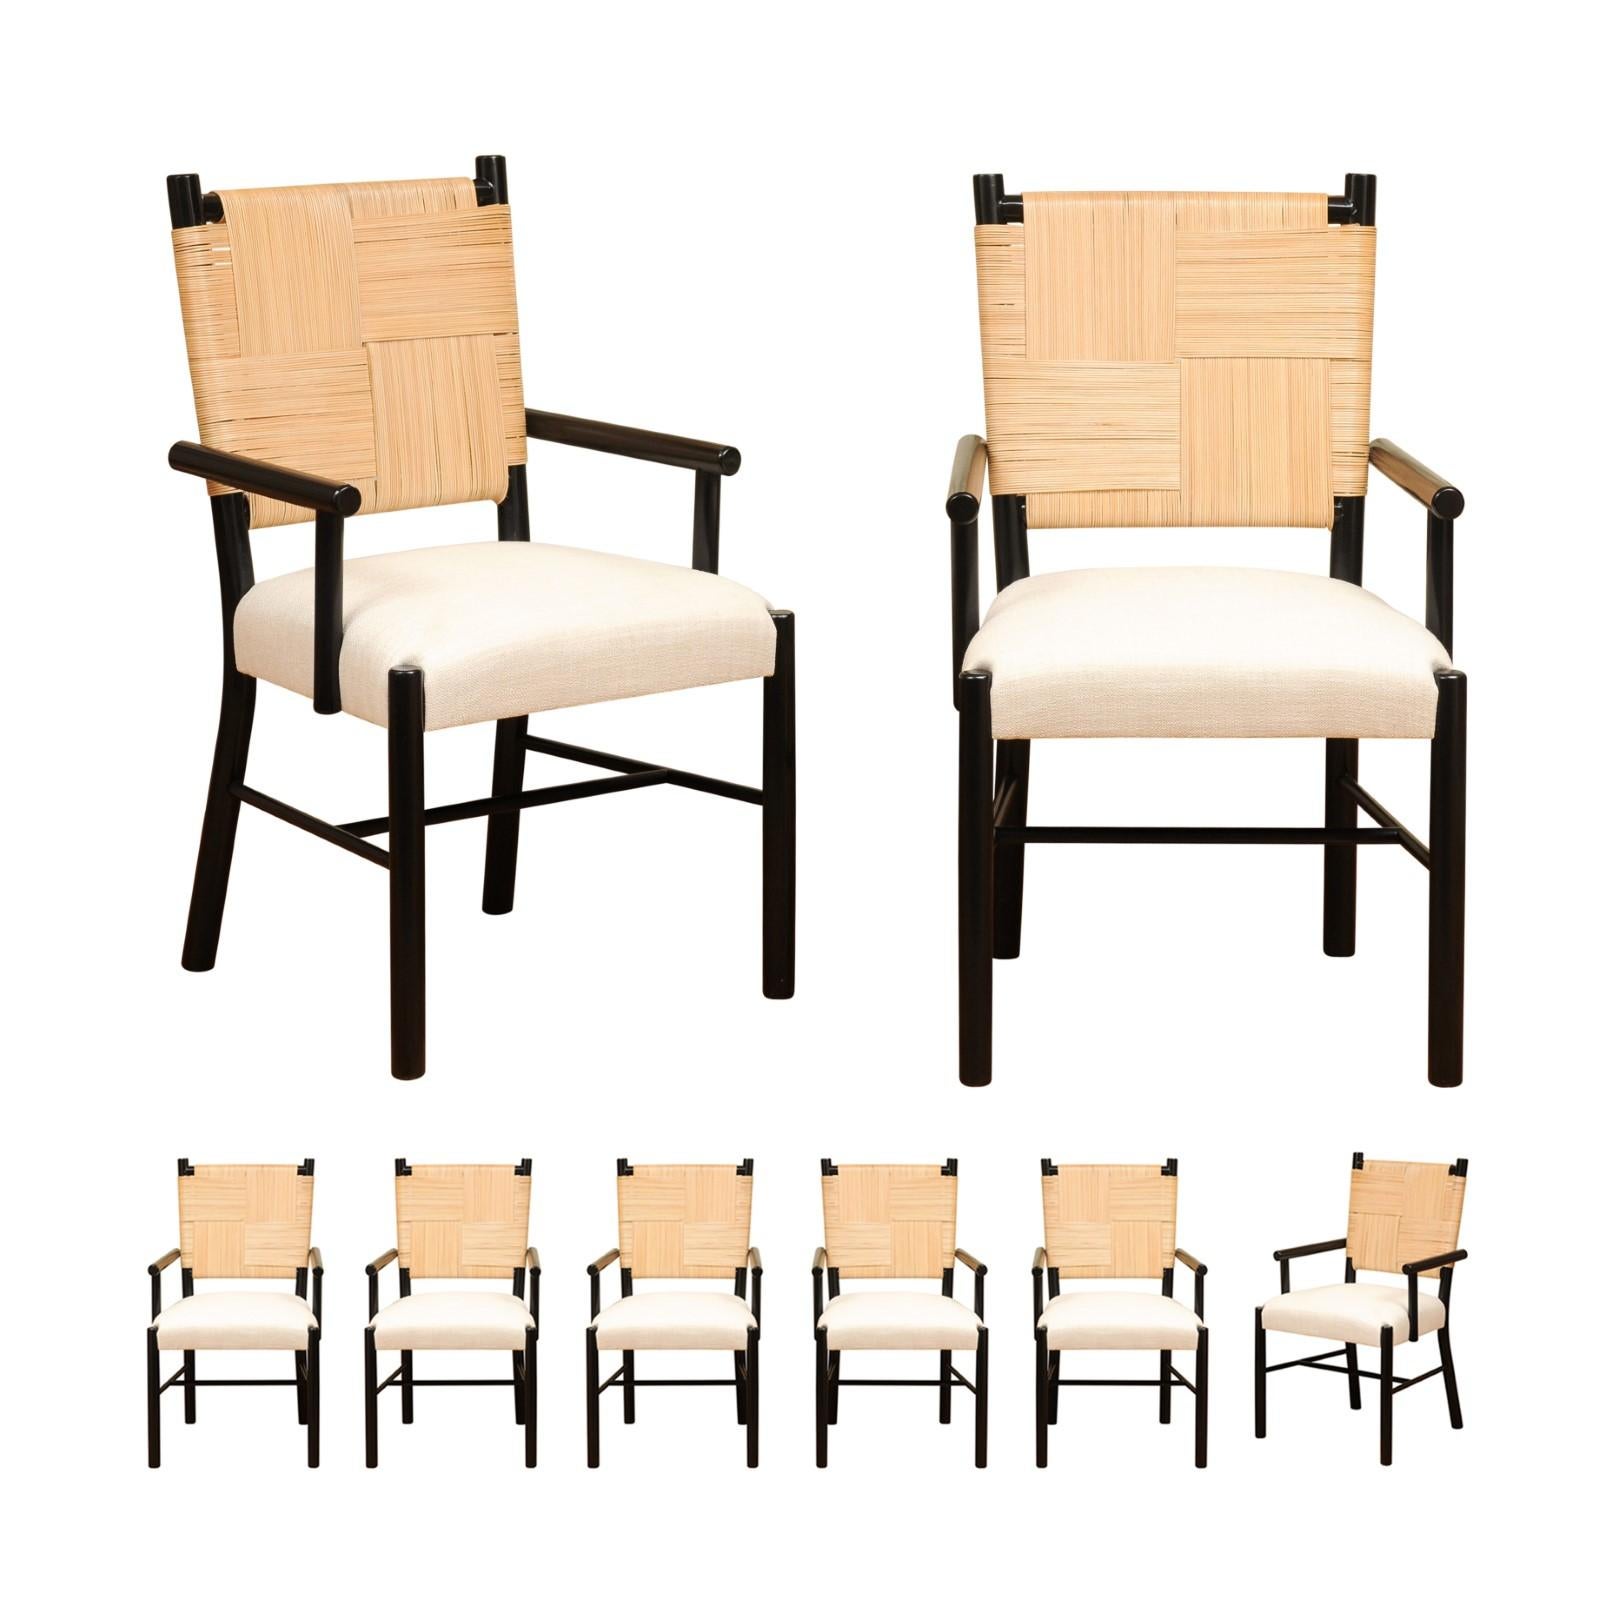 Ce magnifique ensemble de chaises ALL ARMS est unique sur le marché mondial. L'ensemble est expédié tel qu'il a été photographié et décrit par les professionnels dans le texte de l'annonce : Méticuleusement restauré par des professionnels,